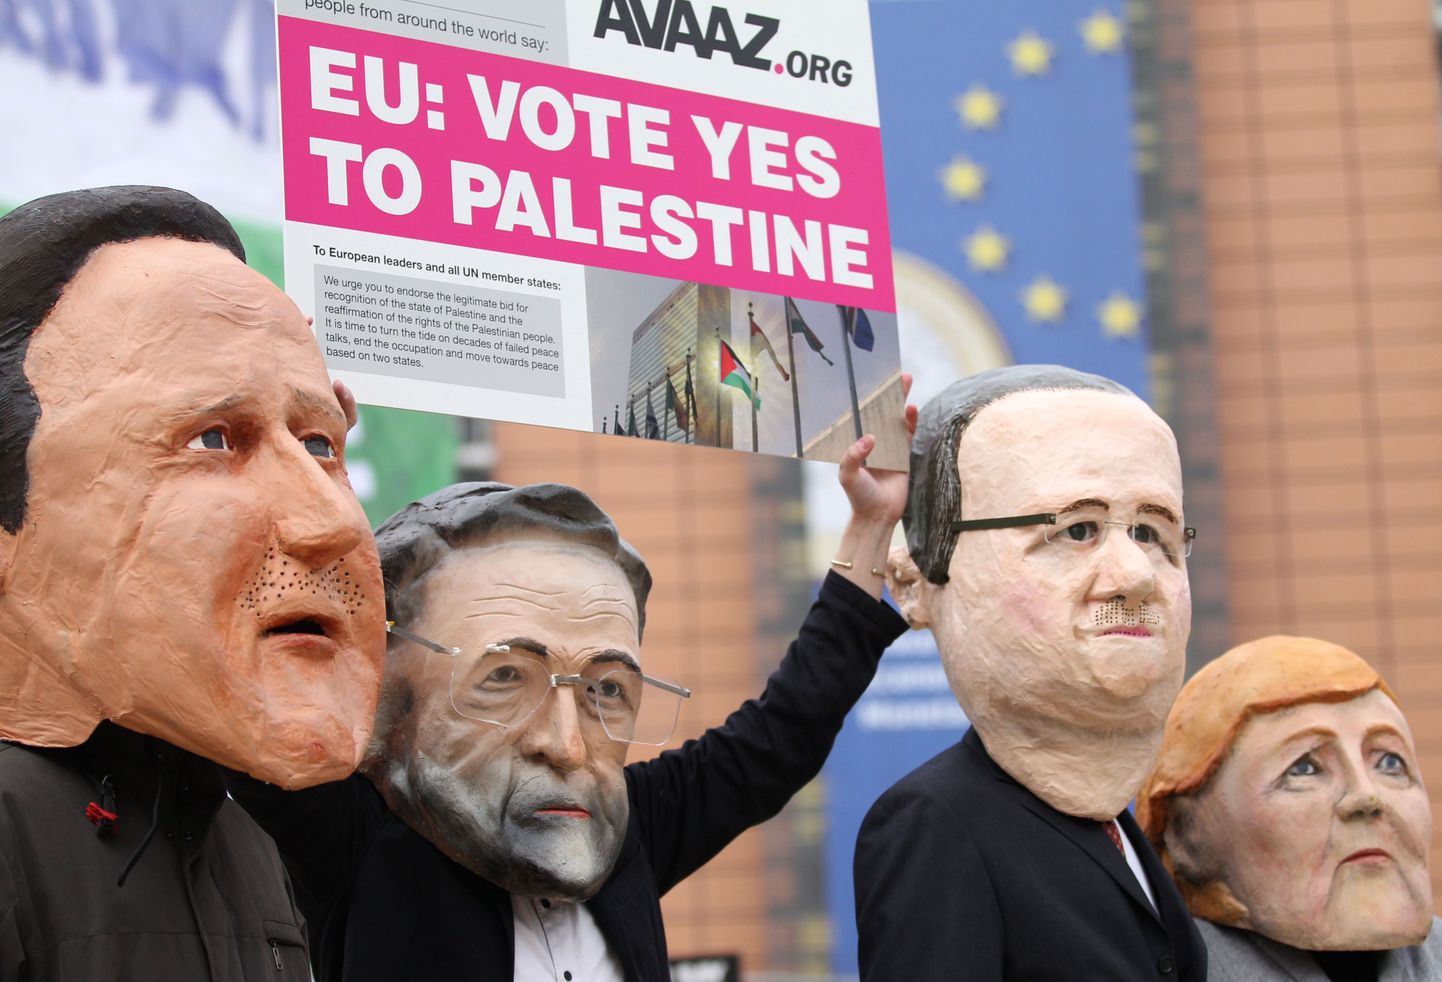 Euroopa tipp-poliitikuid kujutavate maskidega inimesed Brüsselis.